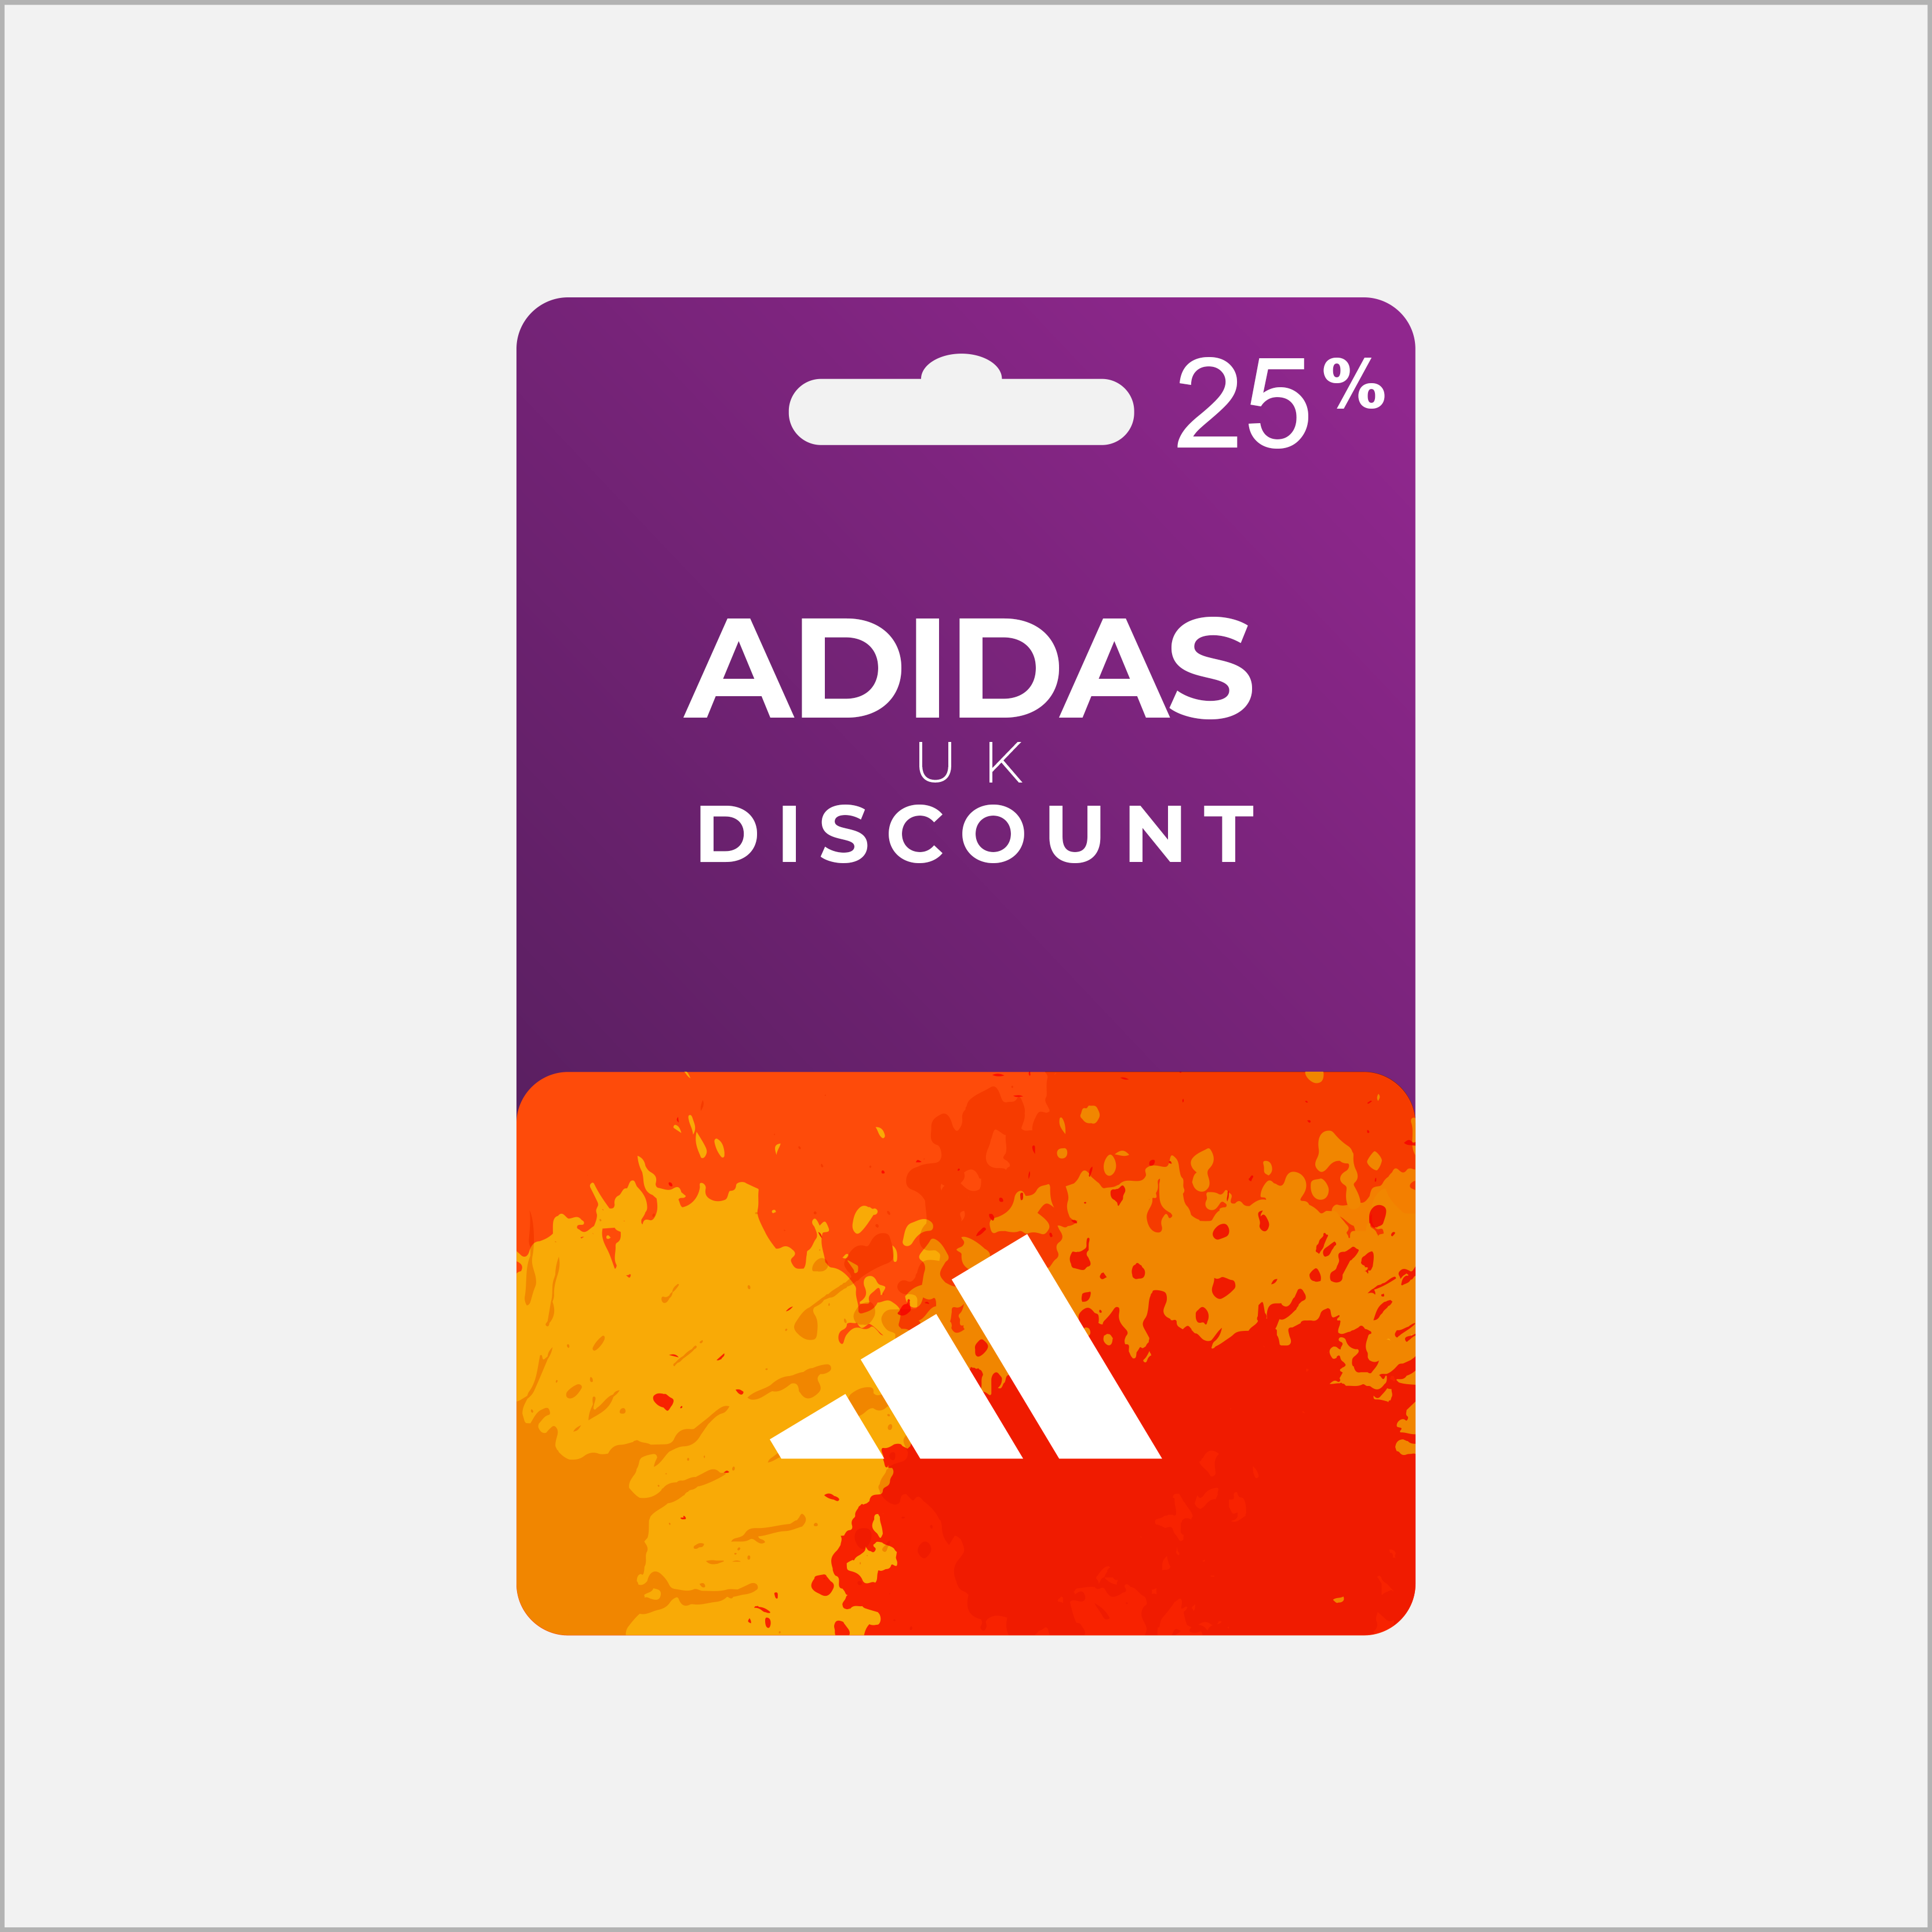 25% UK Adidas Discount Voucher Code